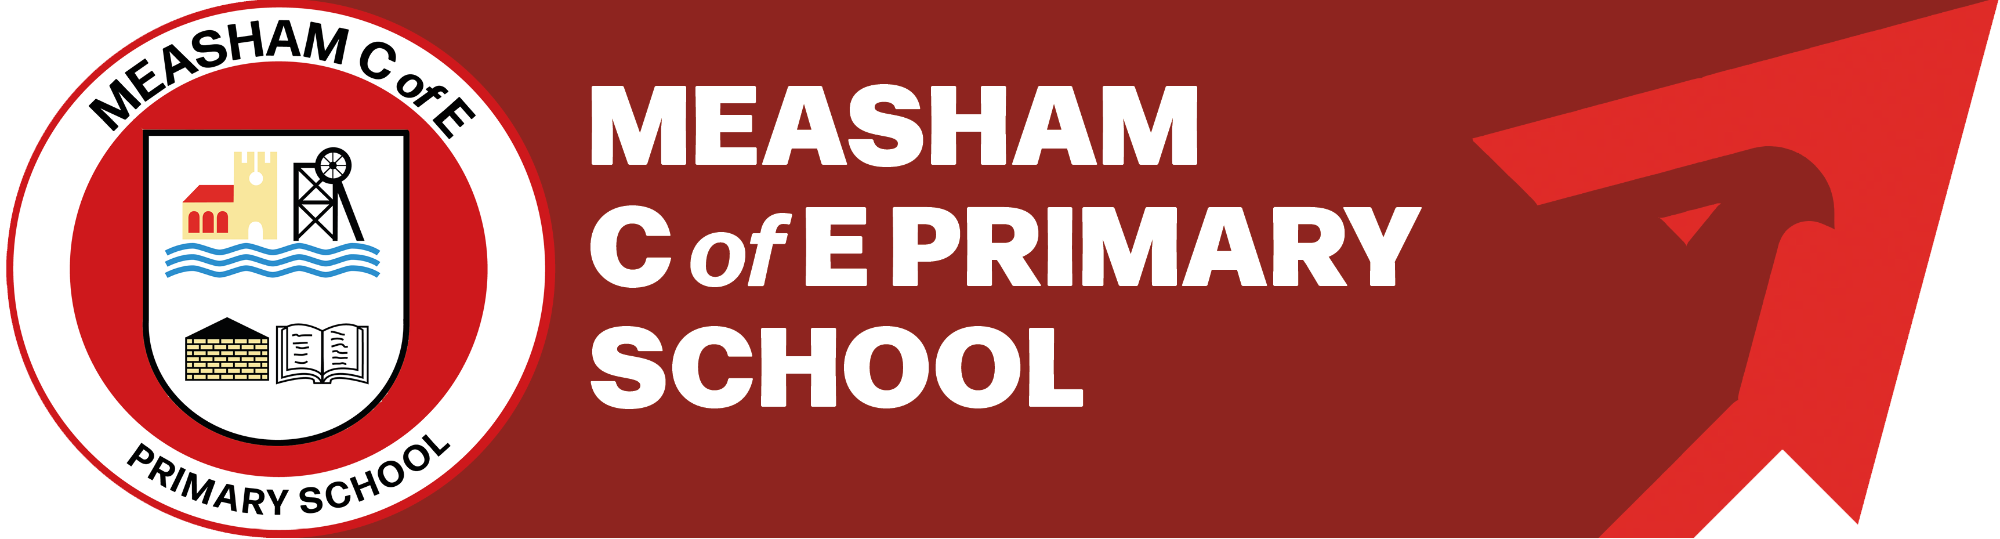 Measham C of E Primary School